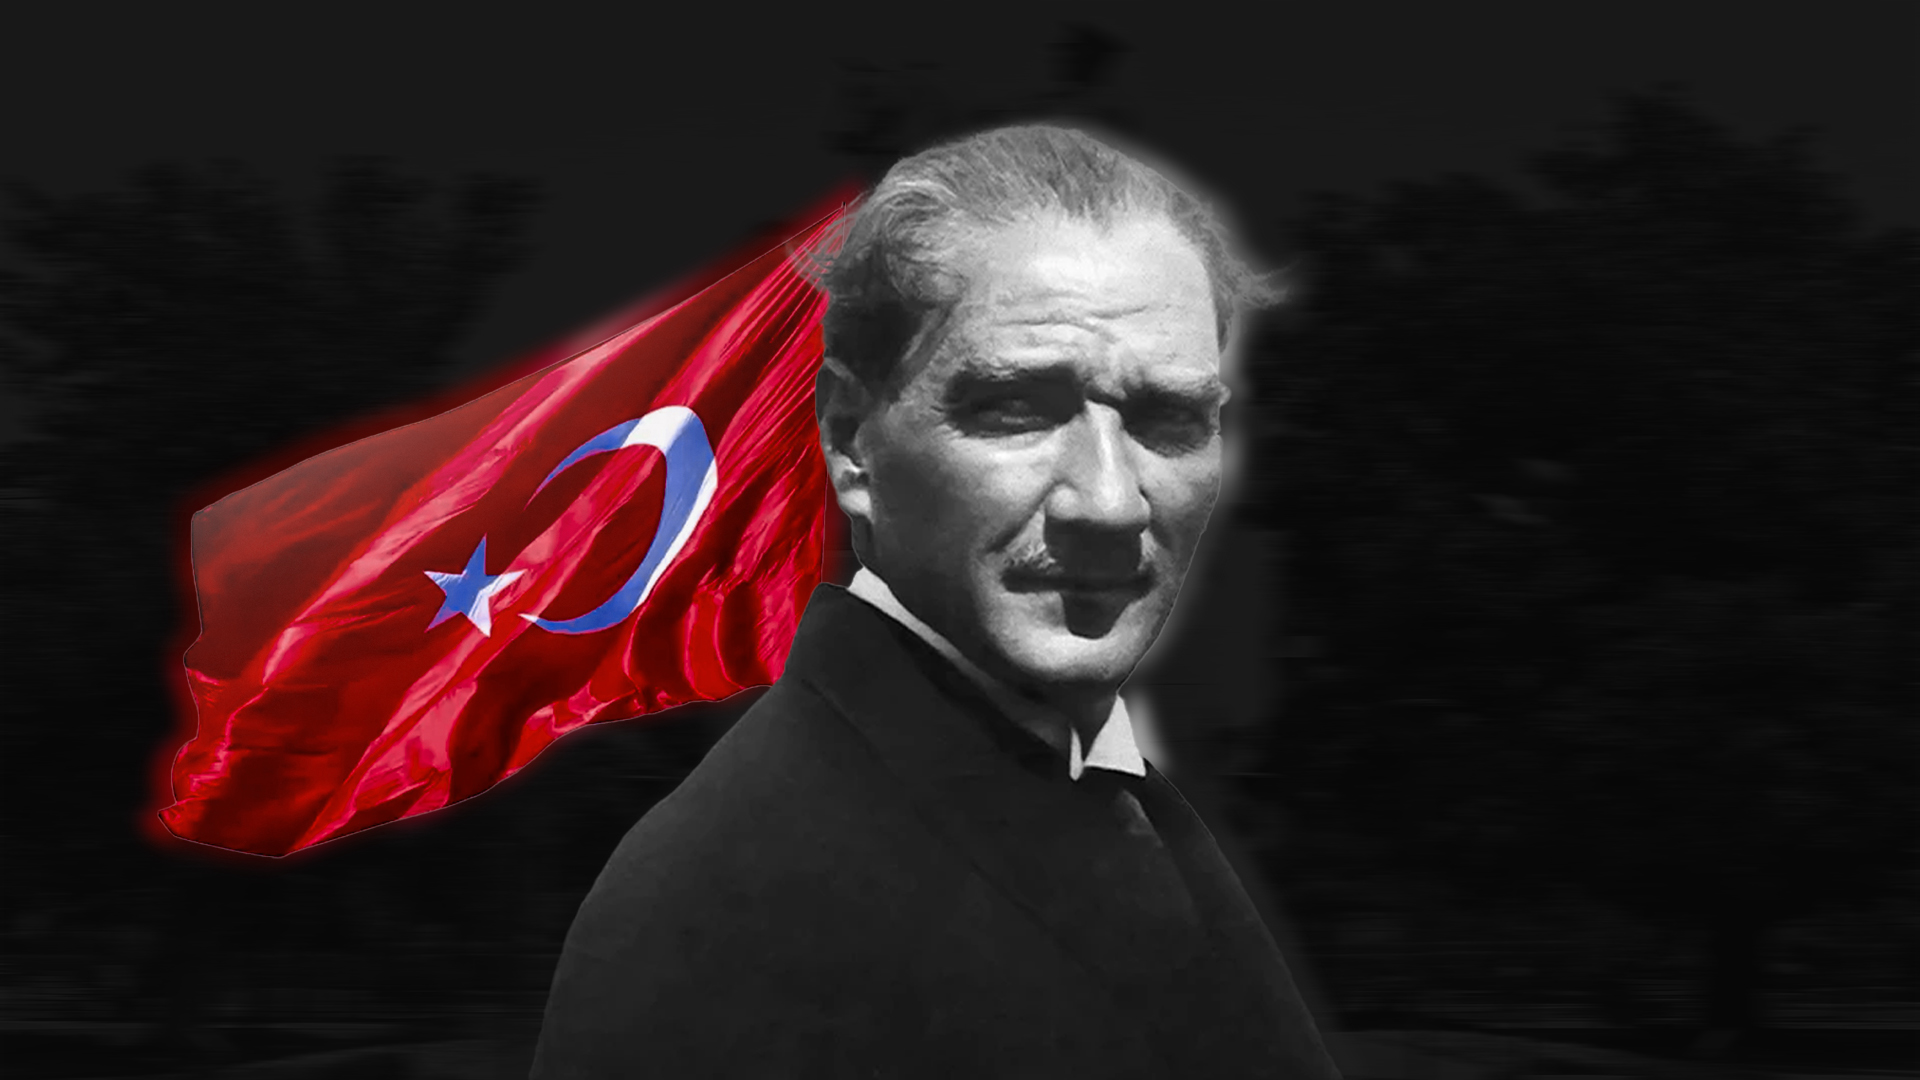 AtaturkDuvarKagıdı-notext.jpg